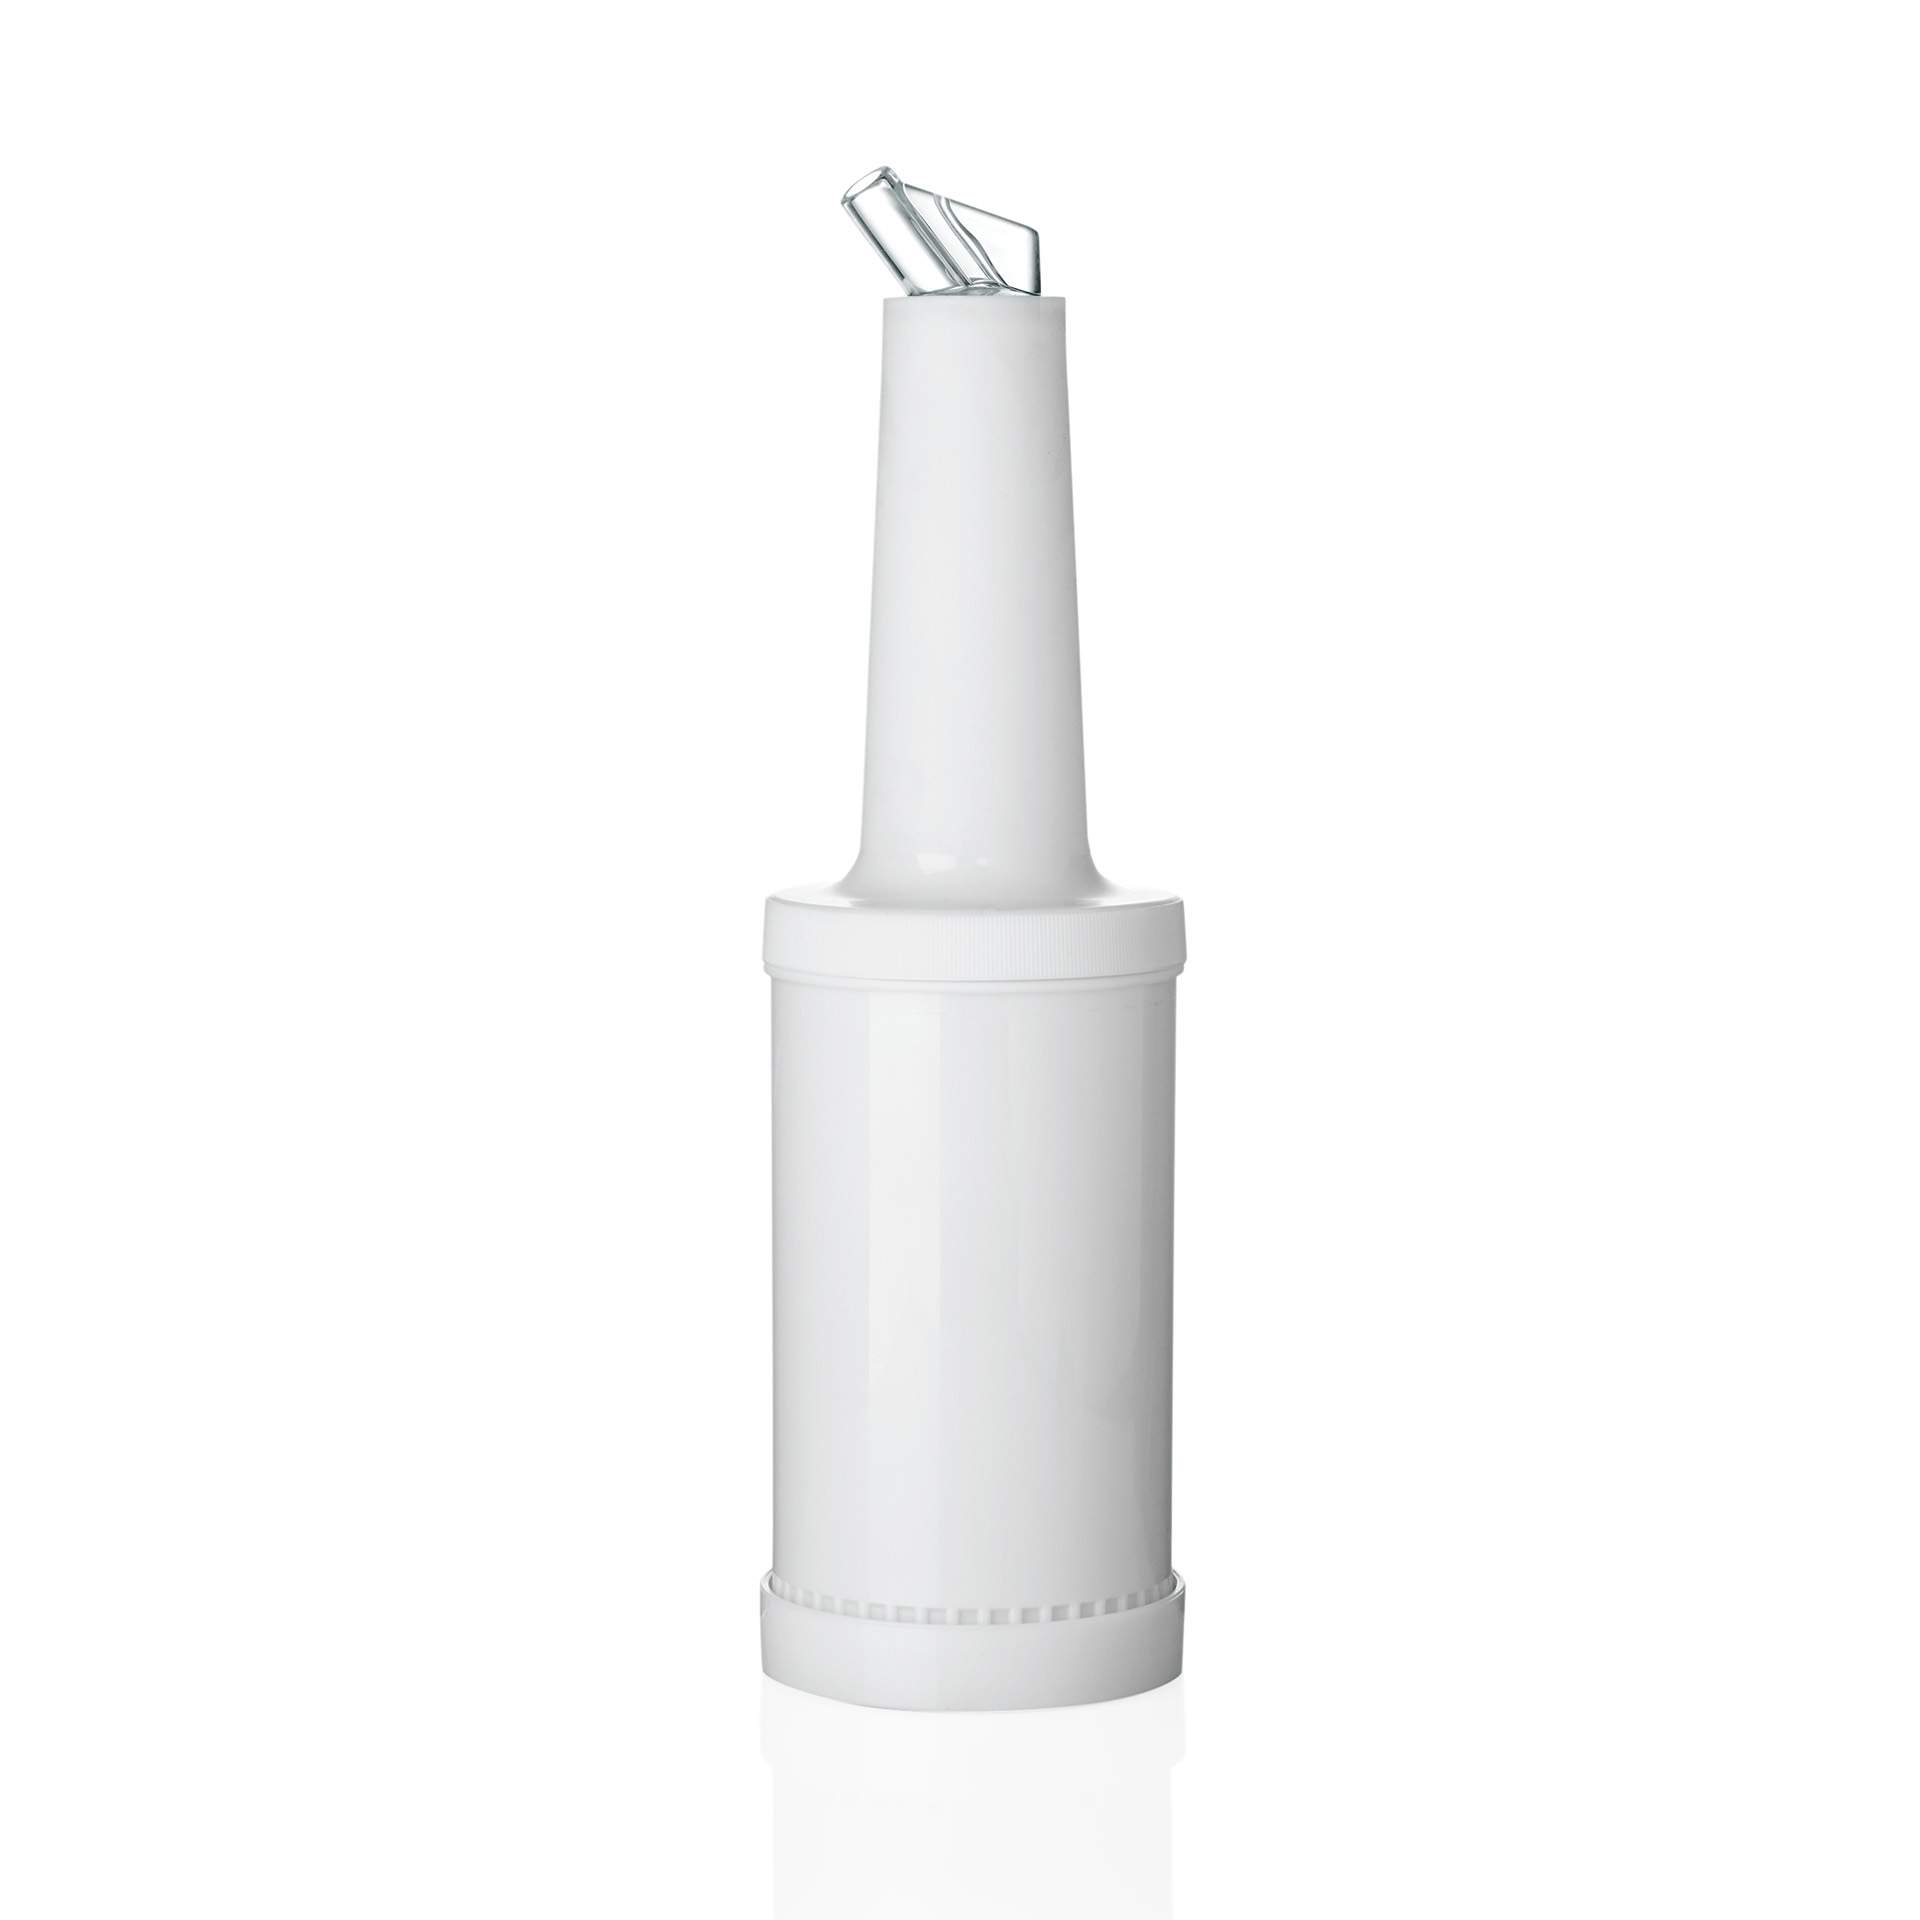 Dosierflasche - 4-teilig - weiß - Inhalt 1,0 l - Polypropylen - 9994005-A